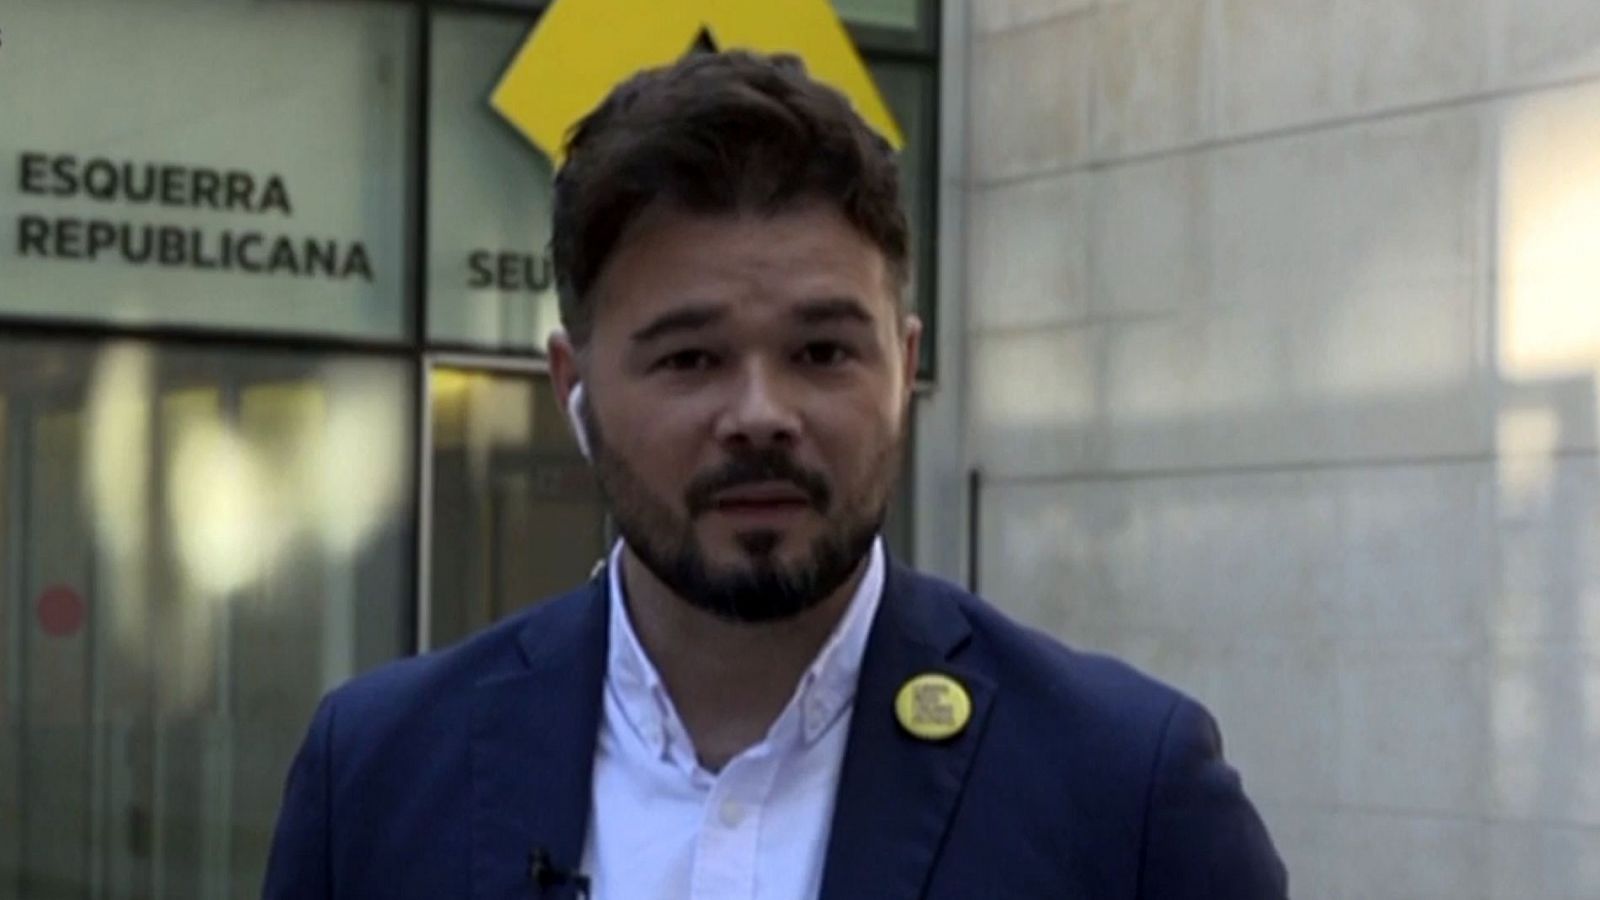 Elecciones Generales 2019 al10N: Rufián, candidato de ERC advierte: "No se puede dialogar con un Sánchez que nos provoca" - RTVE.es